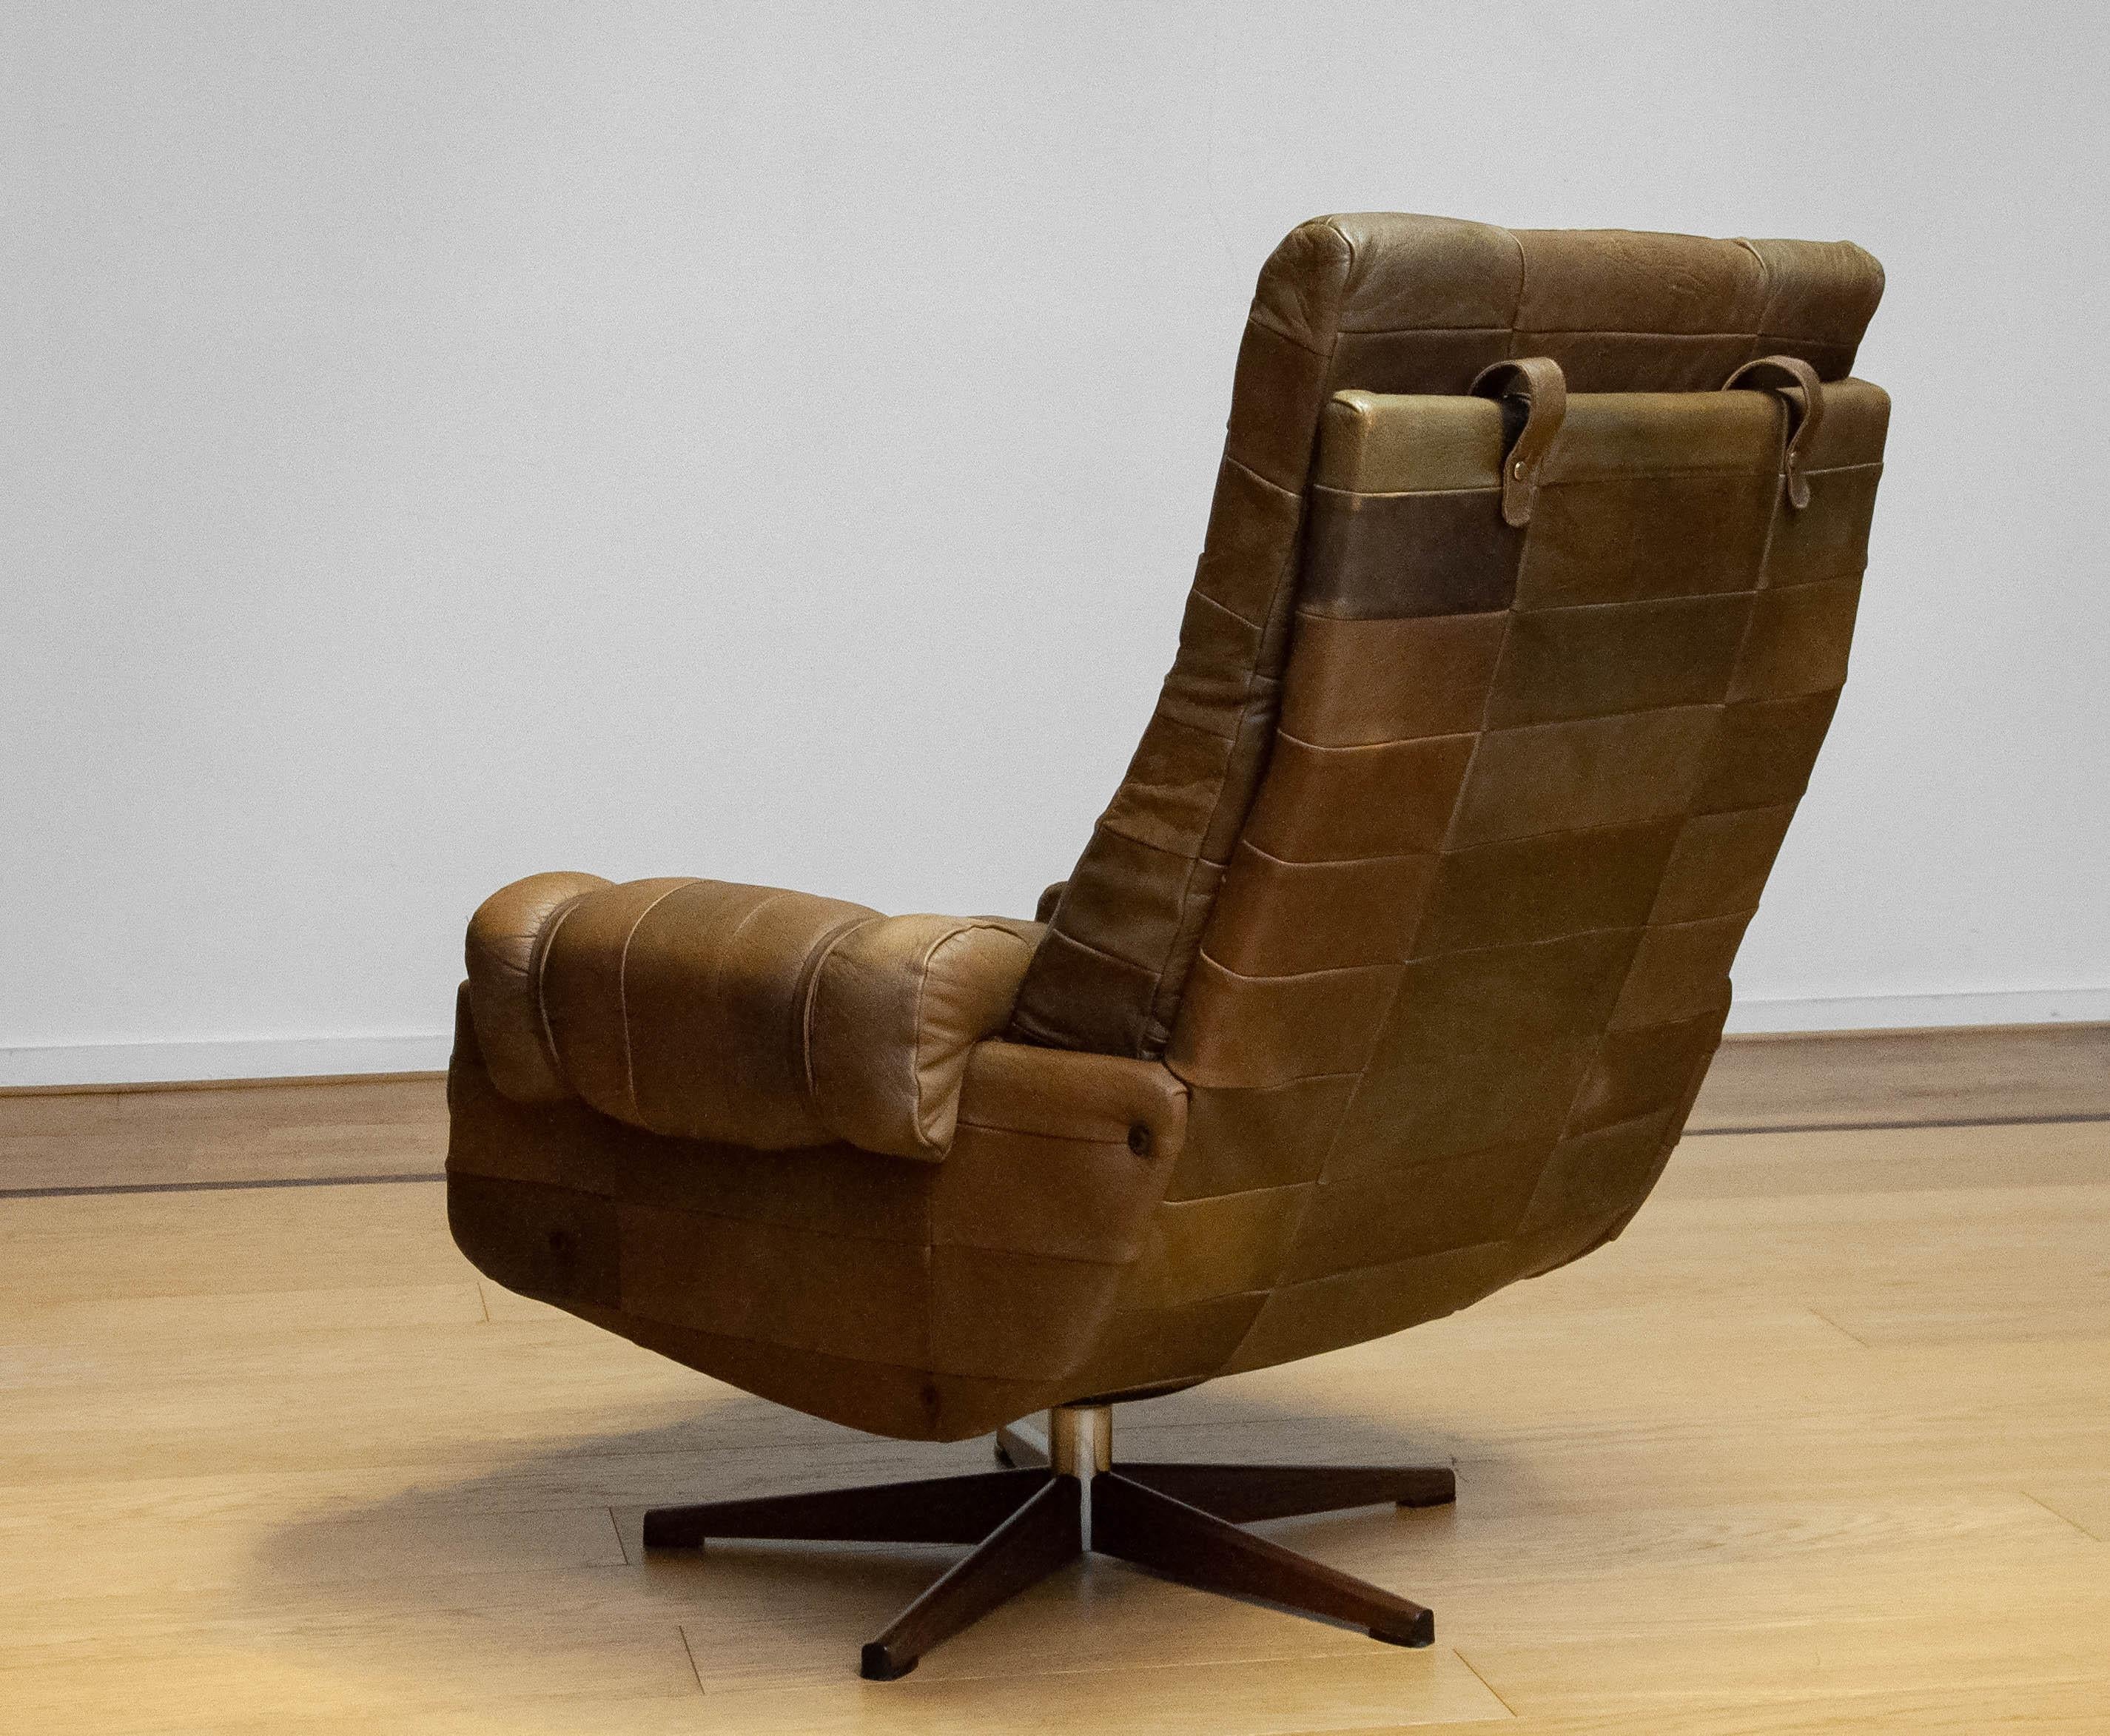 Fin du 20e siècle Chaise pivotante des années 70 par Arne Norell Möbel AB en cuir de buffle robuste vert olive